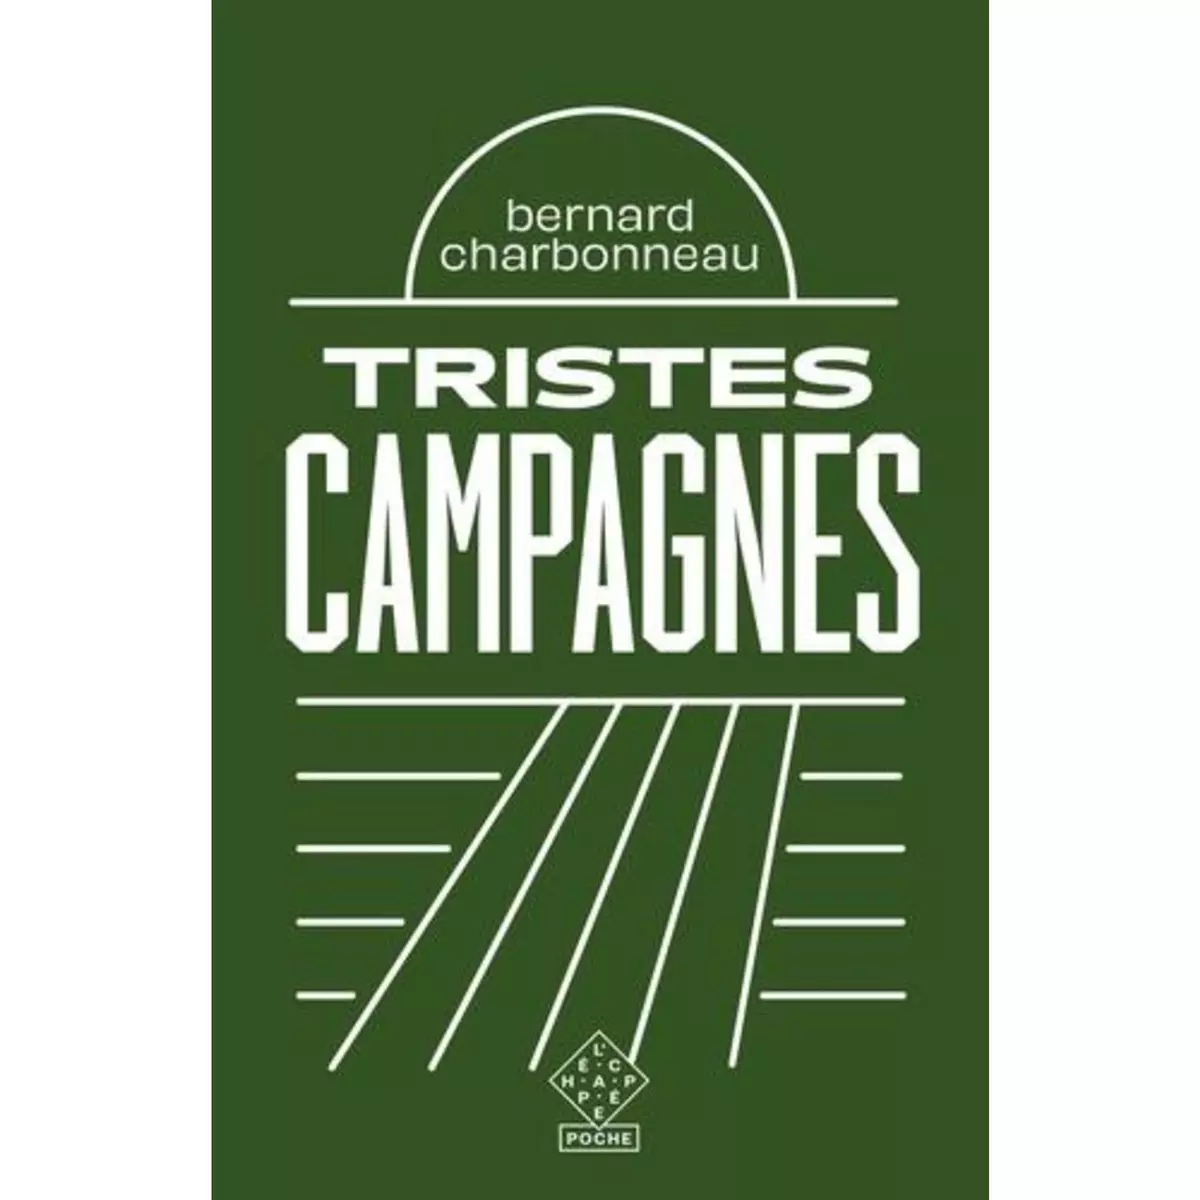  TRISTES CAMPAGNES. EDITION REVUE ET CORRIGEE, Charbonneau Bernard